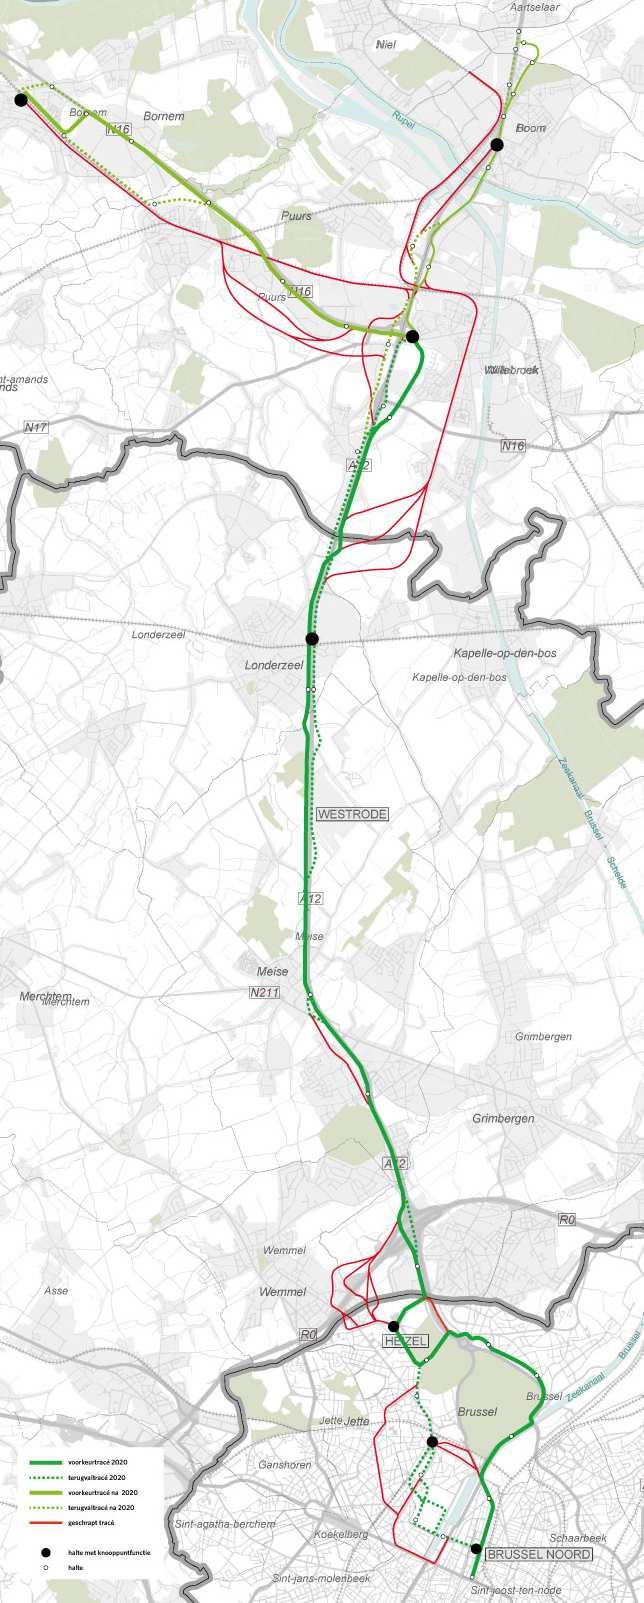 Het projectalternatief vertrekt vanuit het nulalternatief, met de volgende wijzigingen: Een tramlijn tussen Willebroek en Brussel noord.